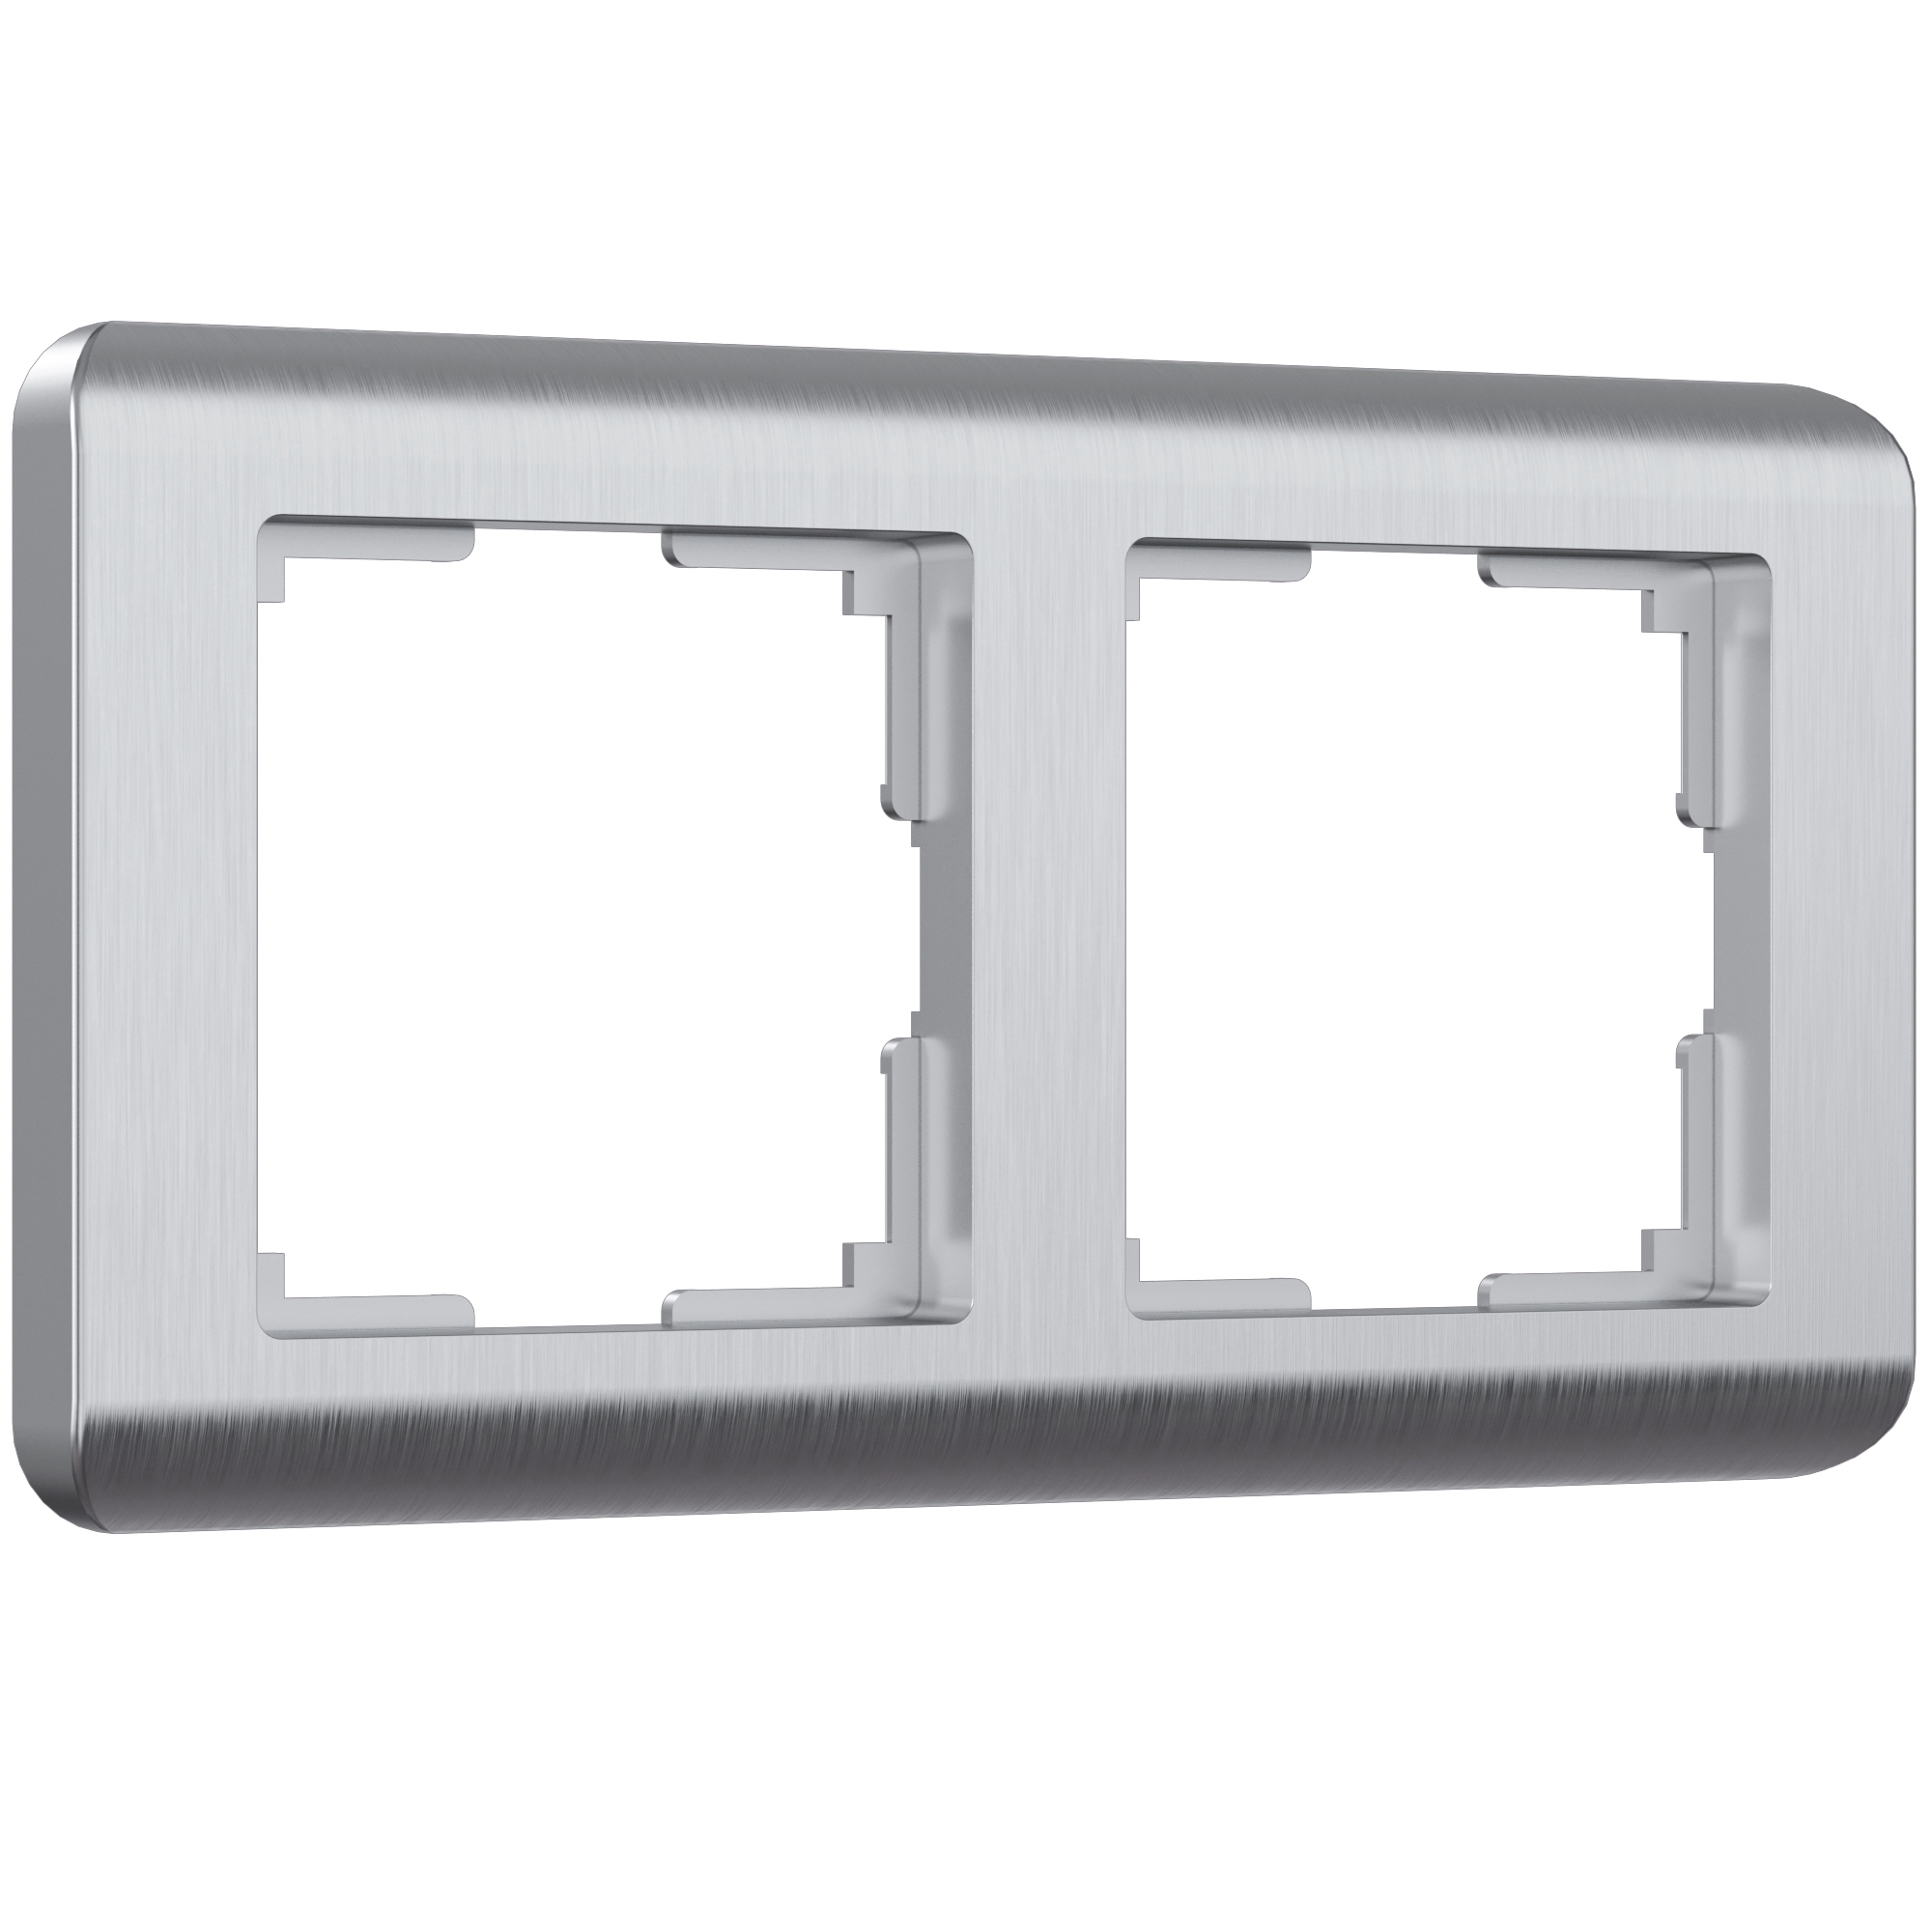 Рамка для розетки / выключателя на 2 поста Werkel W0022106 Stream серебряный пластик